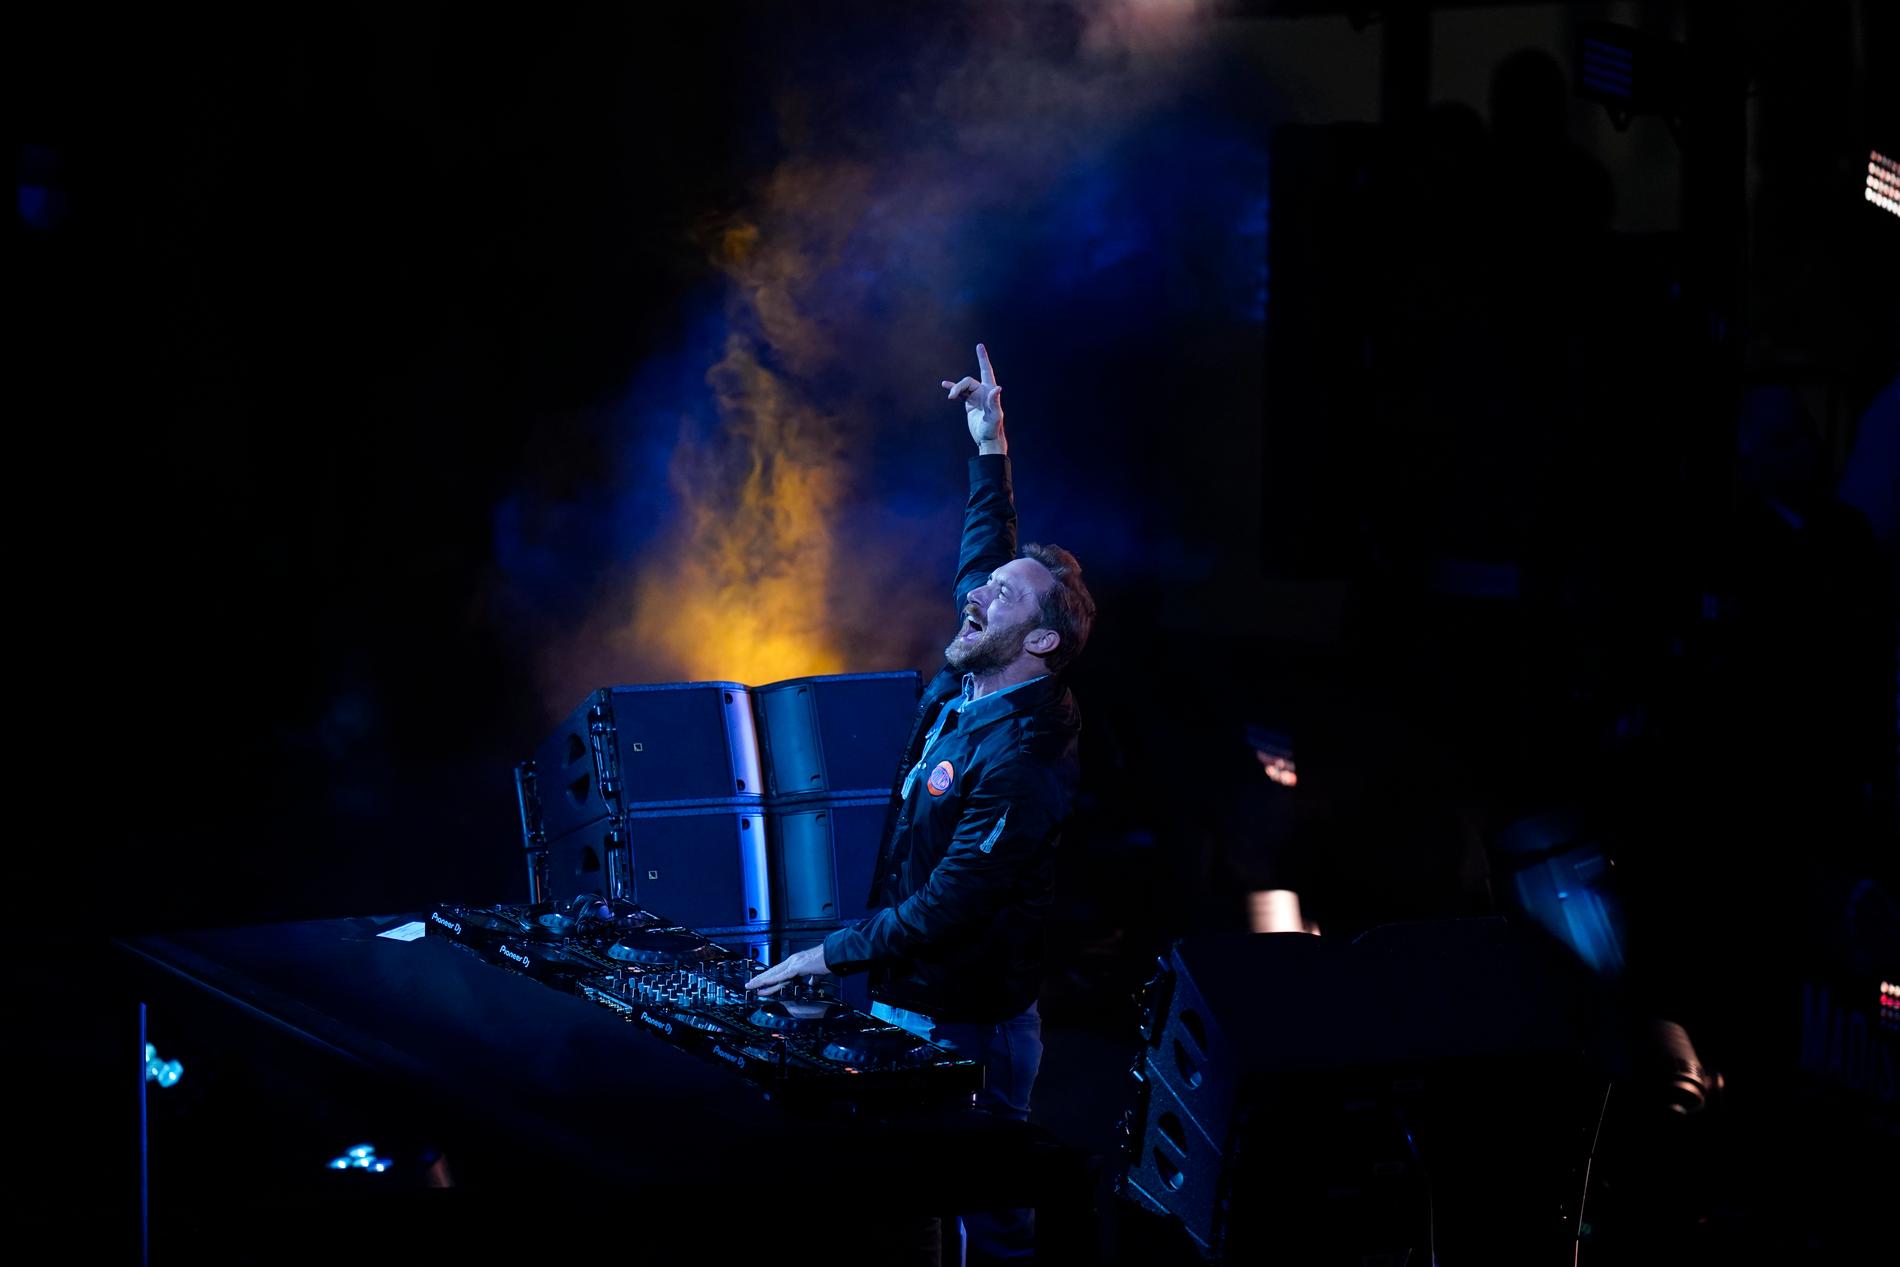 Arrangören av en planerad festival i Norrköping uppgav att franske dj:n David Guetta var bokad. Arkivbild.